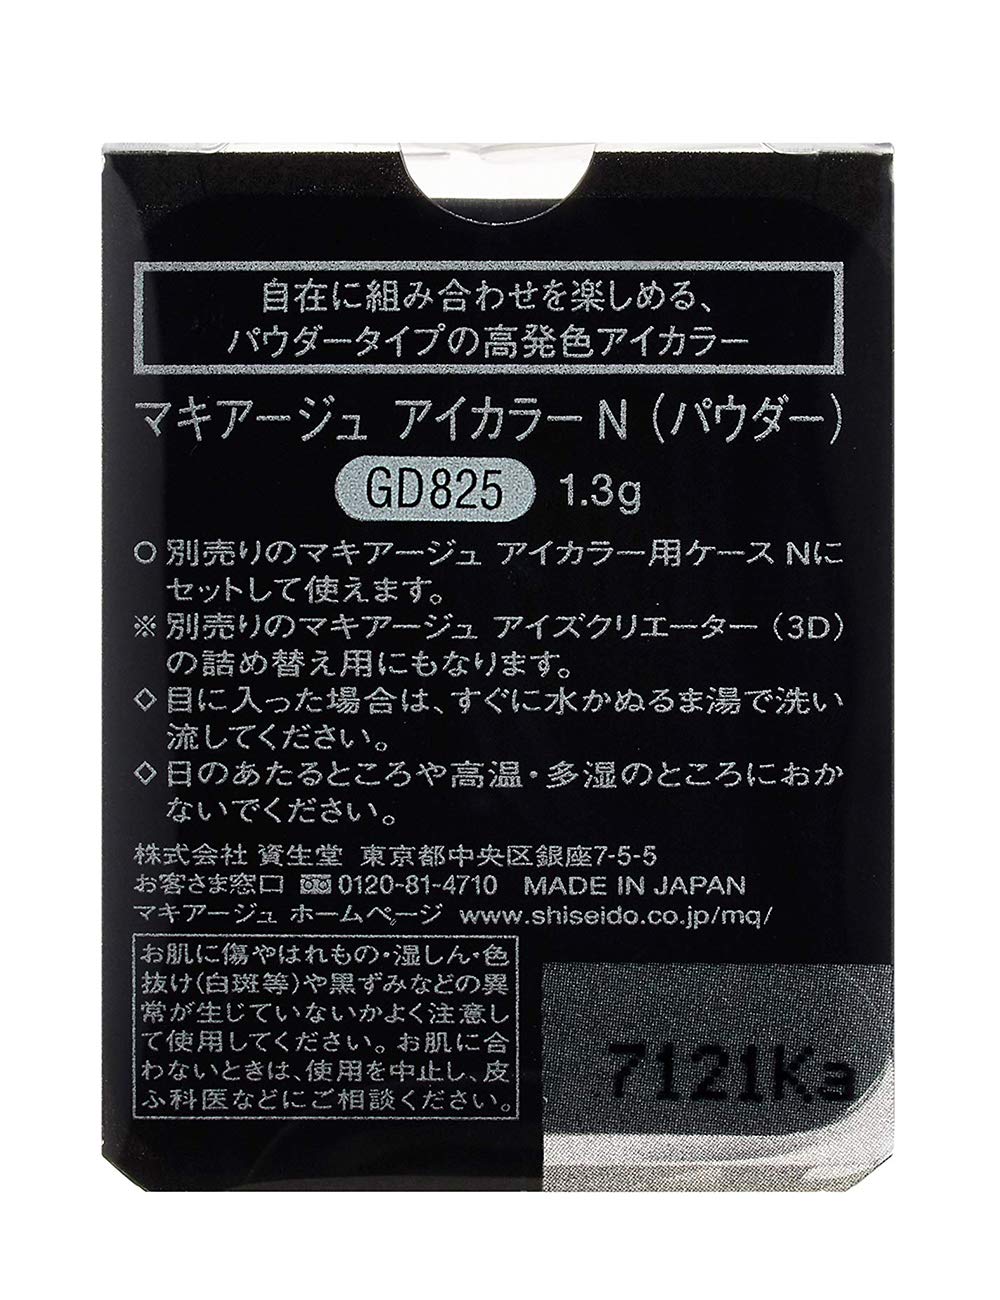 Zettoc Style Re-Cept Skin Premium Emulsion 140ml - Japanese Milky Lotion - Emulsion Brands